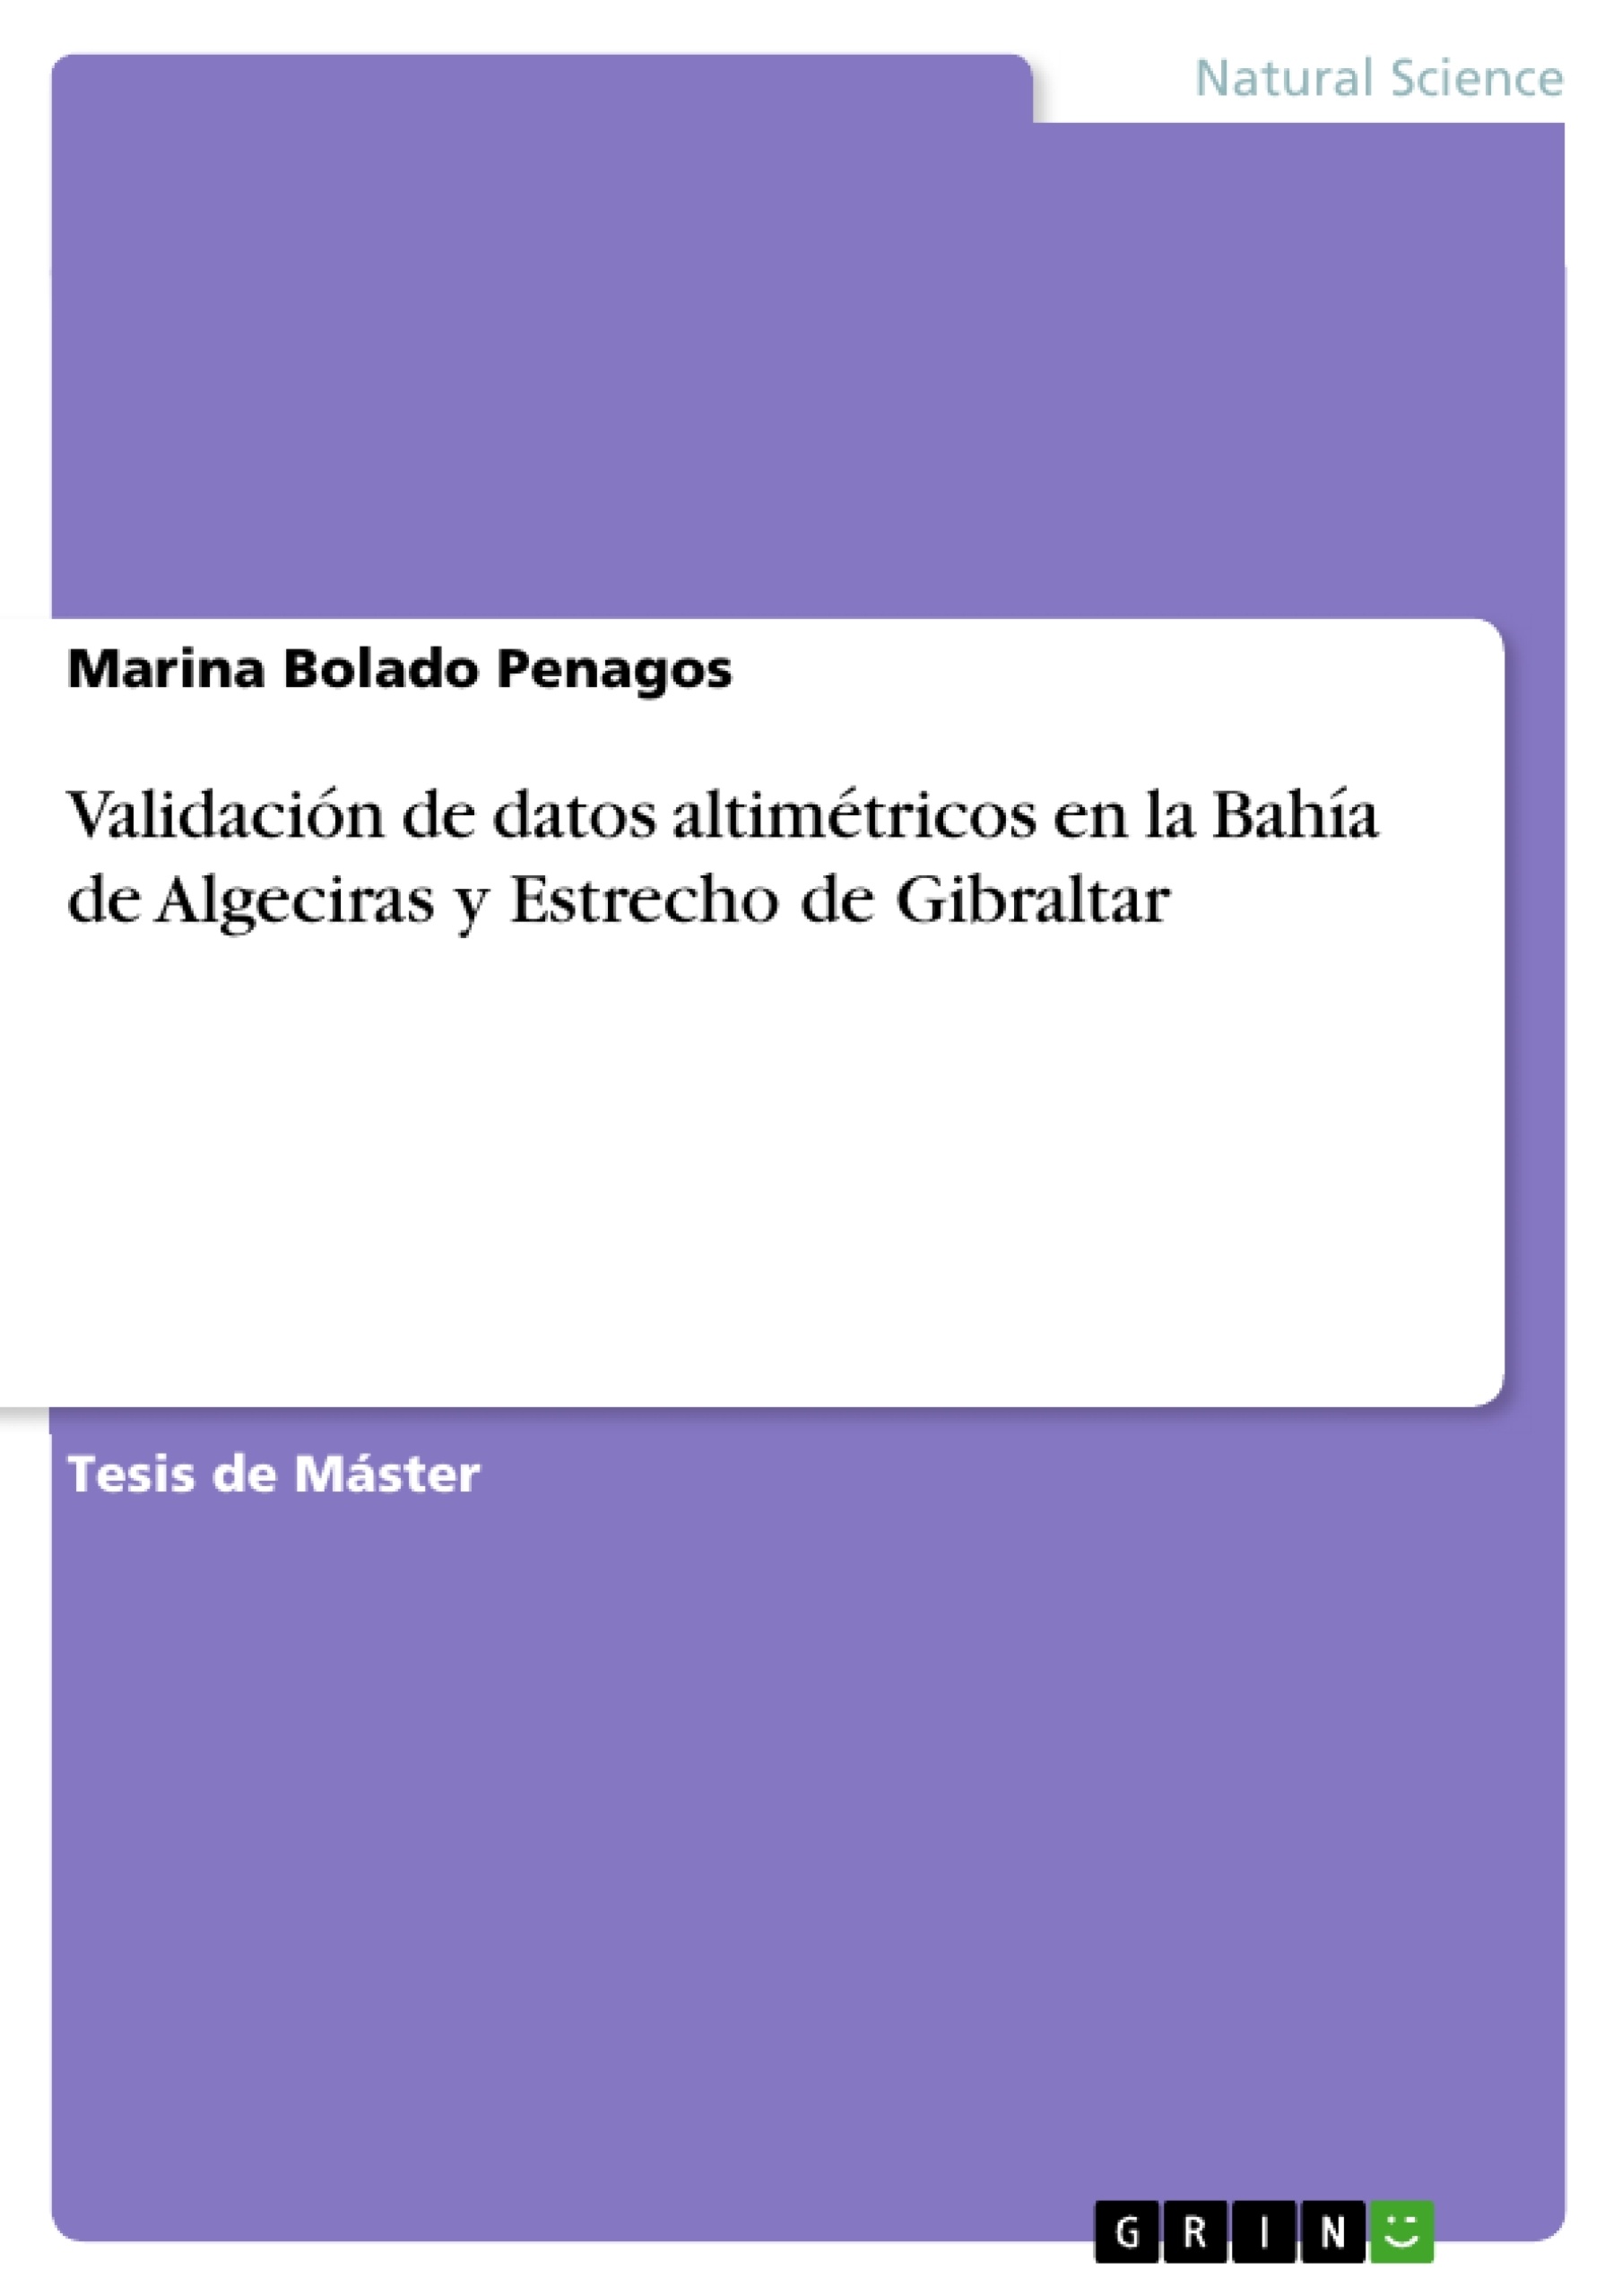 Title: Validación de datos altimétricos en la Bahía de Algeciras y Estrecho de Gibraltar